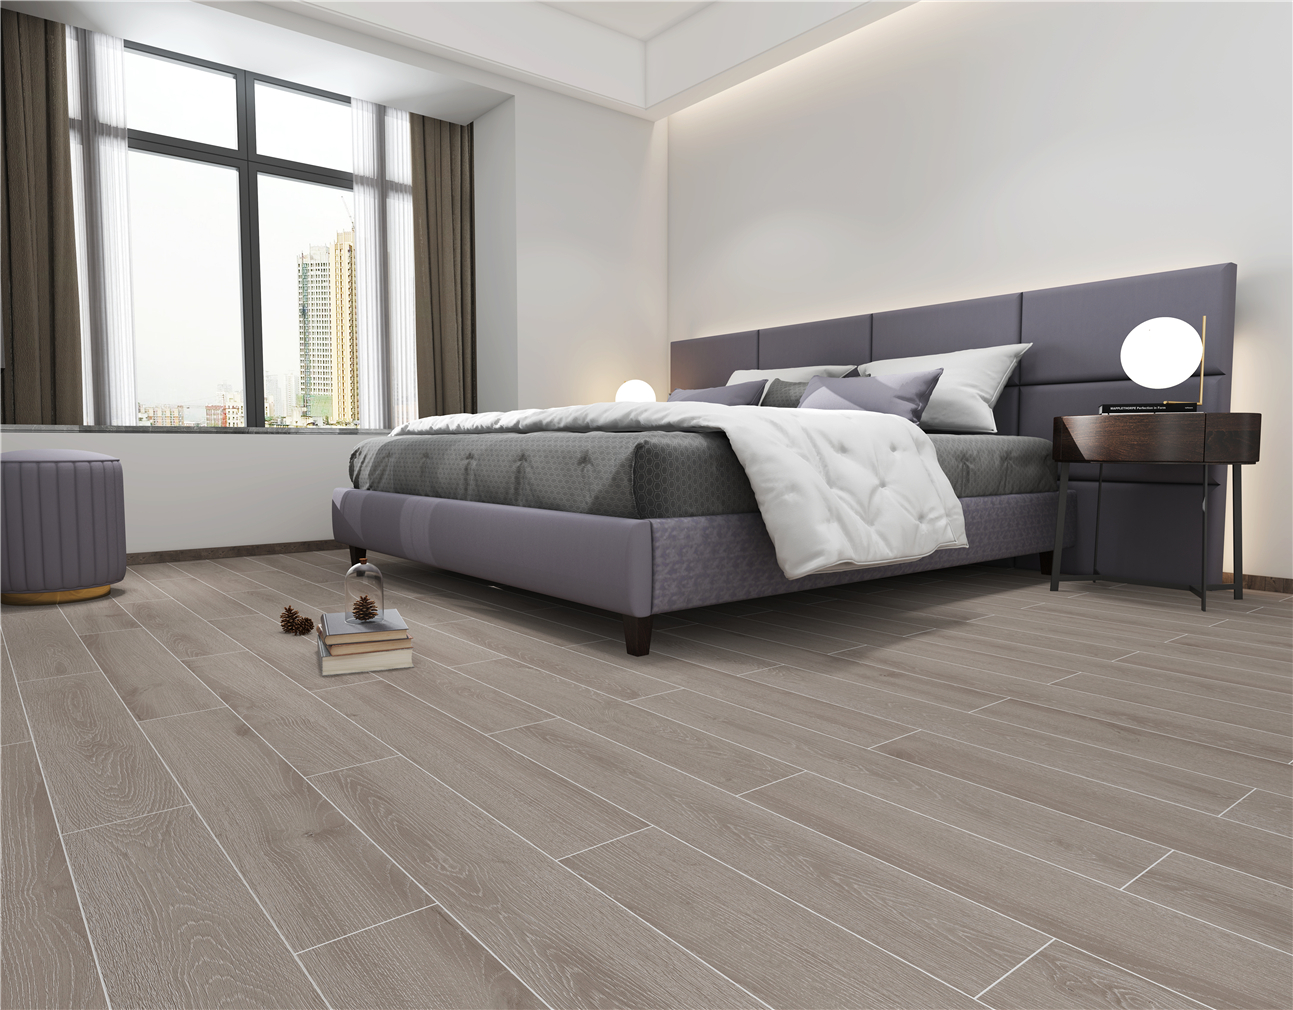 欧洲白橡（卡其灰）木纹砖ICGS915016卧室空间效果图